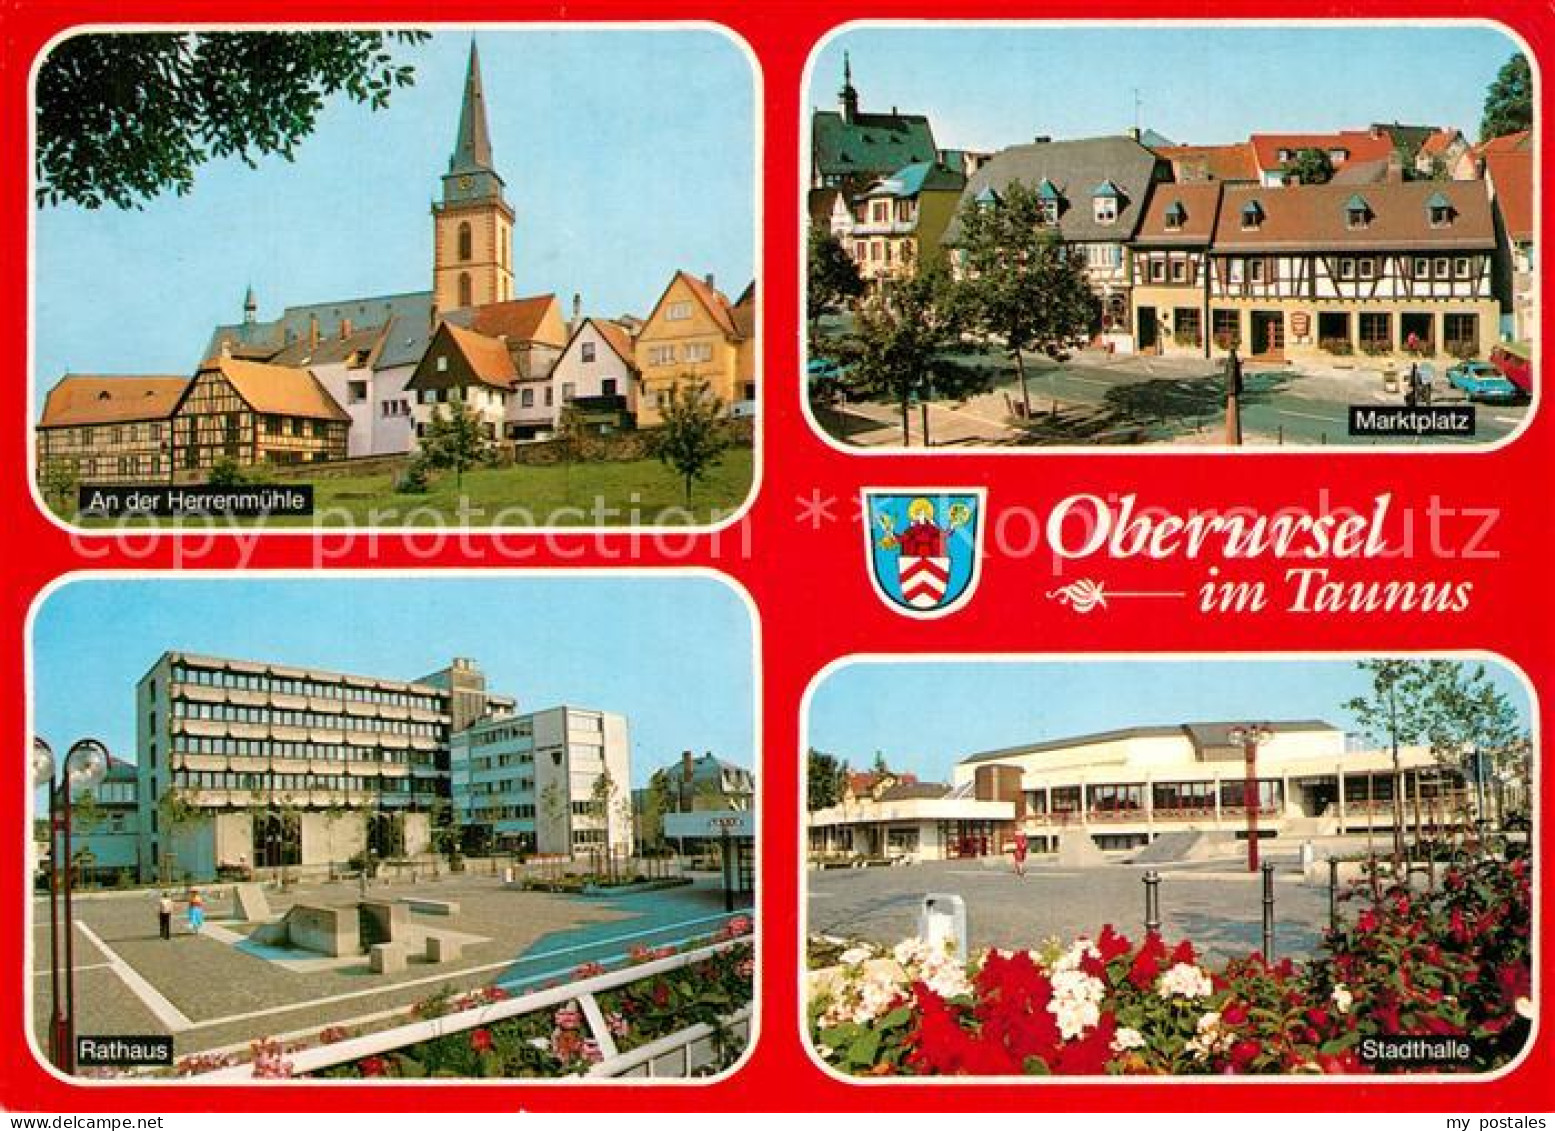 73271199 Oberursel Taunus Herrenmuehle Marktplatz Rathaus Stadthalle Oberursel T - Oberursel